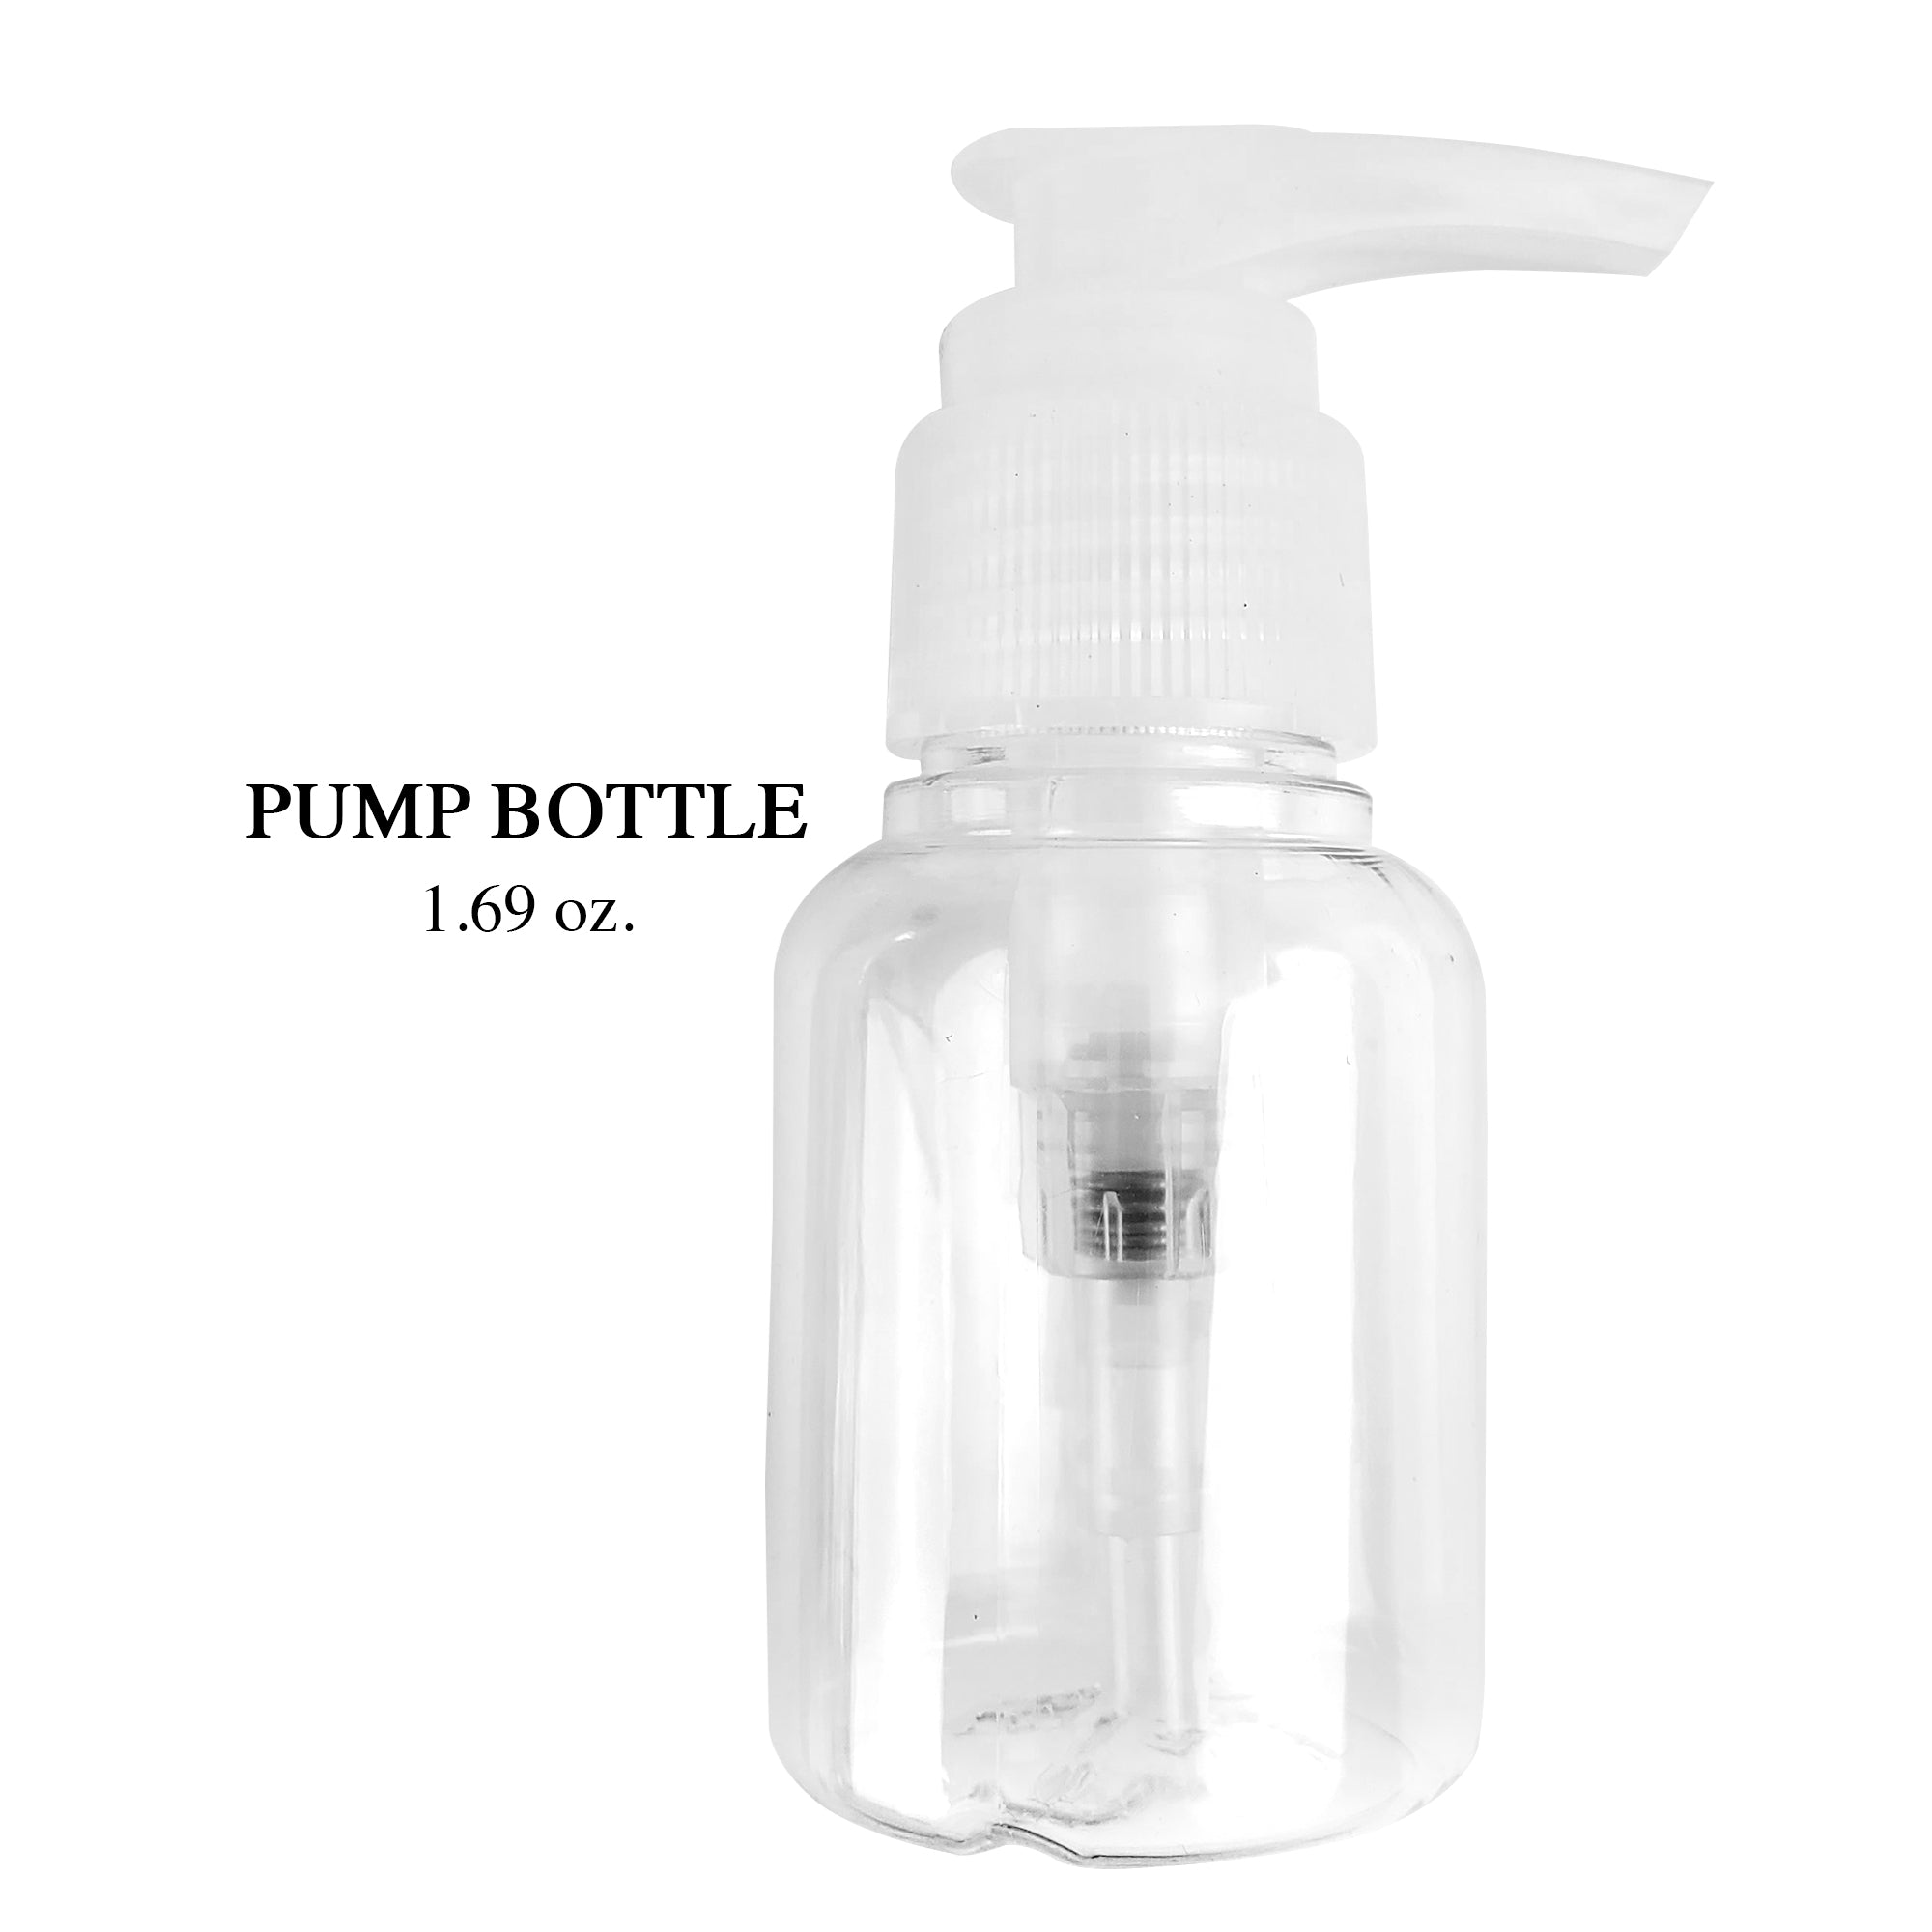 6-Piece Small Travel Pump Bottle 1.69 oz (D114)